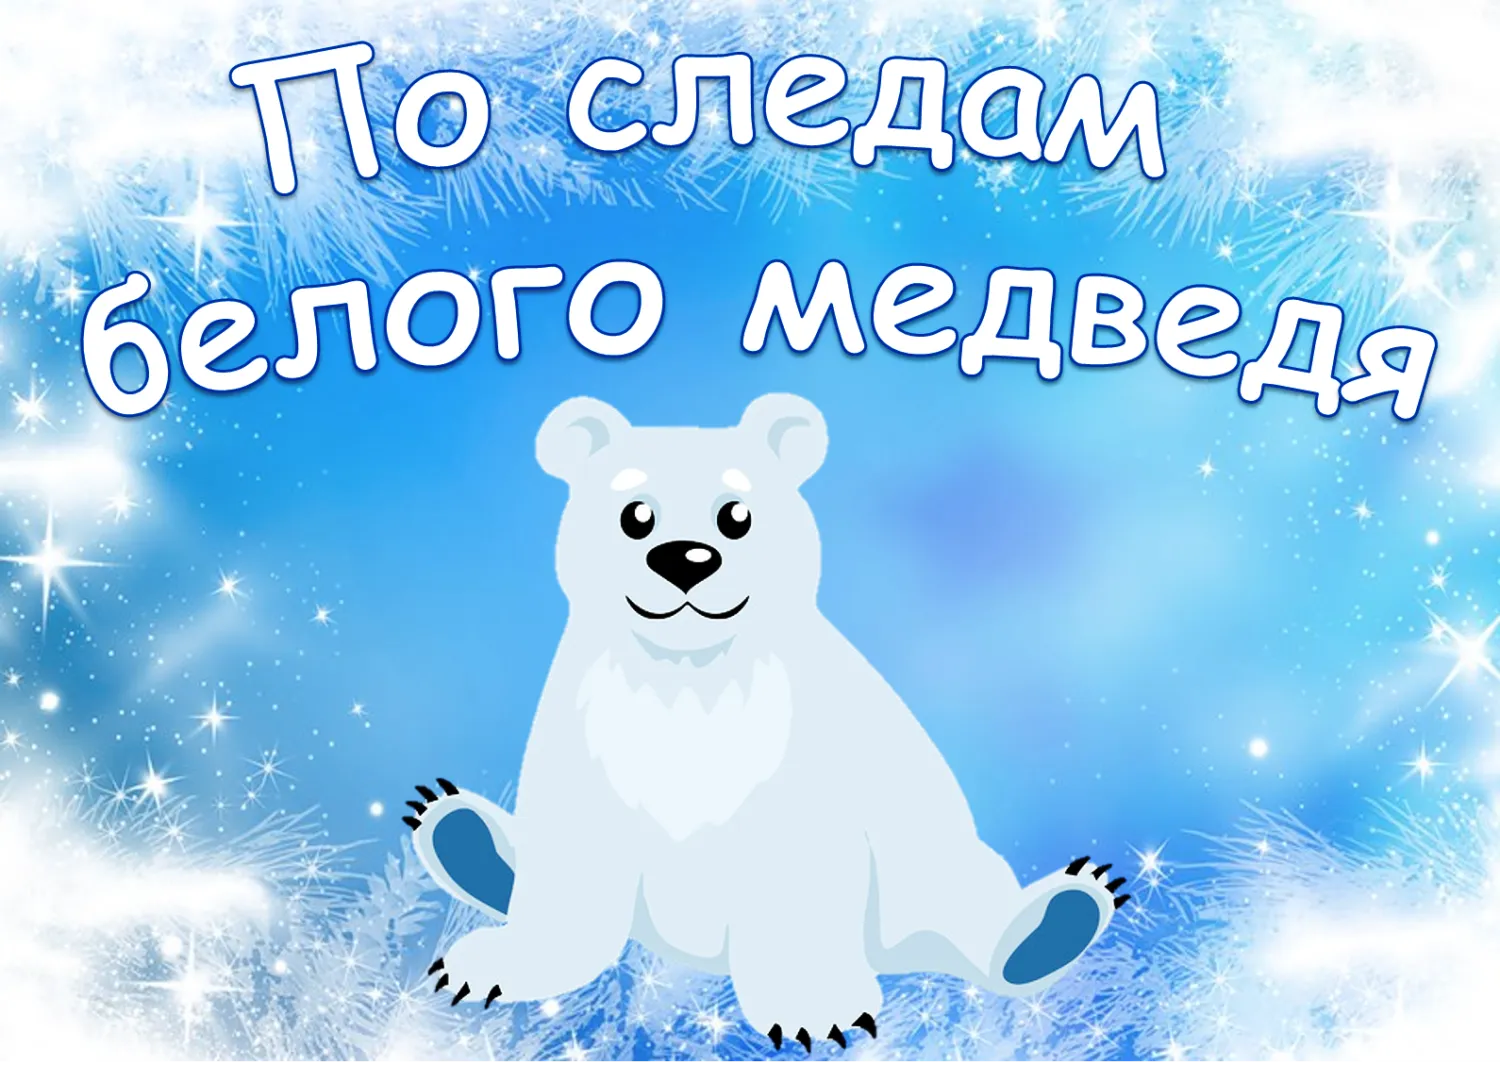 27 февраля праздники в мире. День белого медведя. Международный день полярного медведя. 27 Февраля Международный день полярного медведя. День белого полярного медведя 27 февраля.